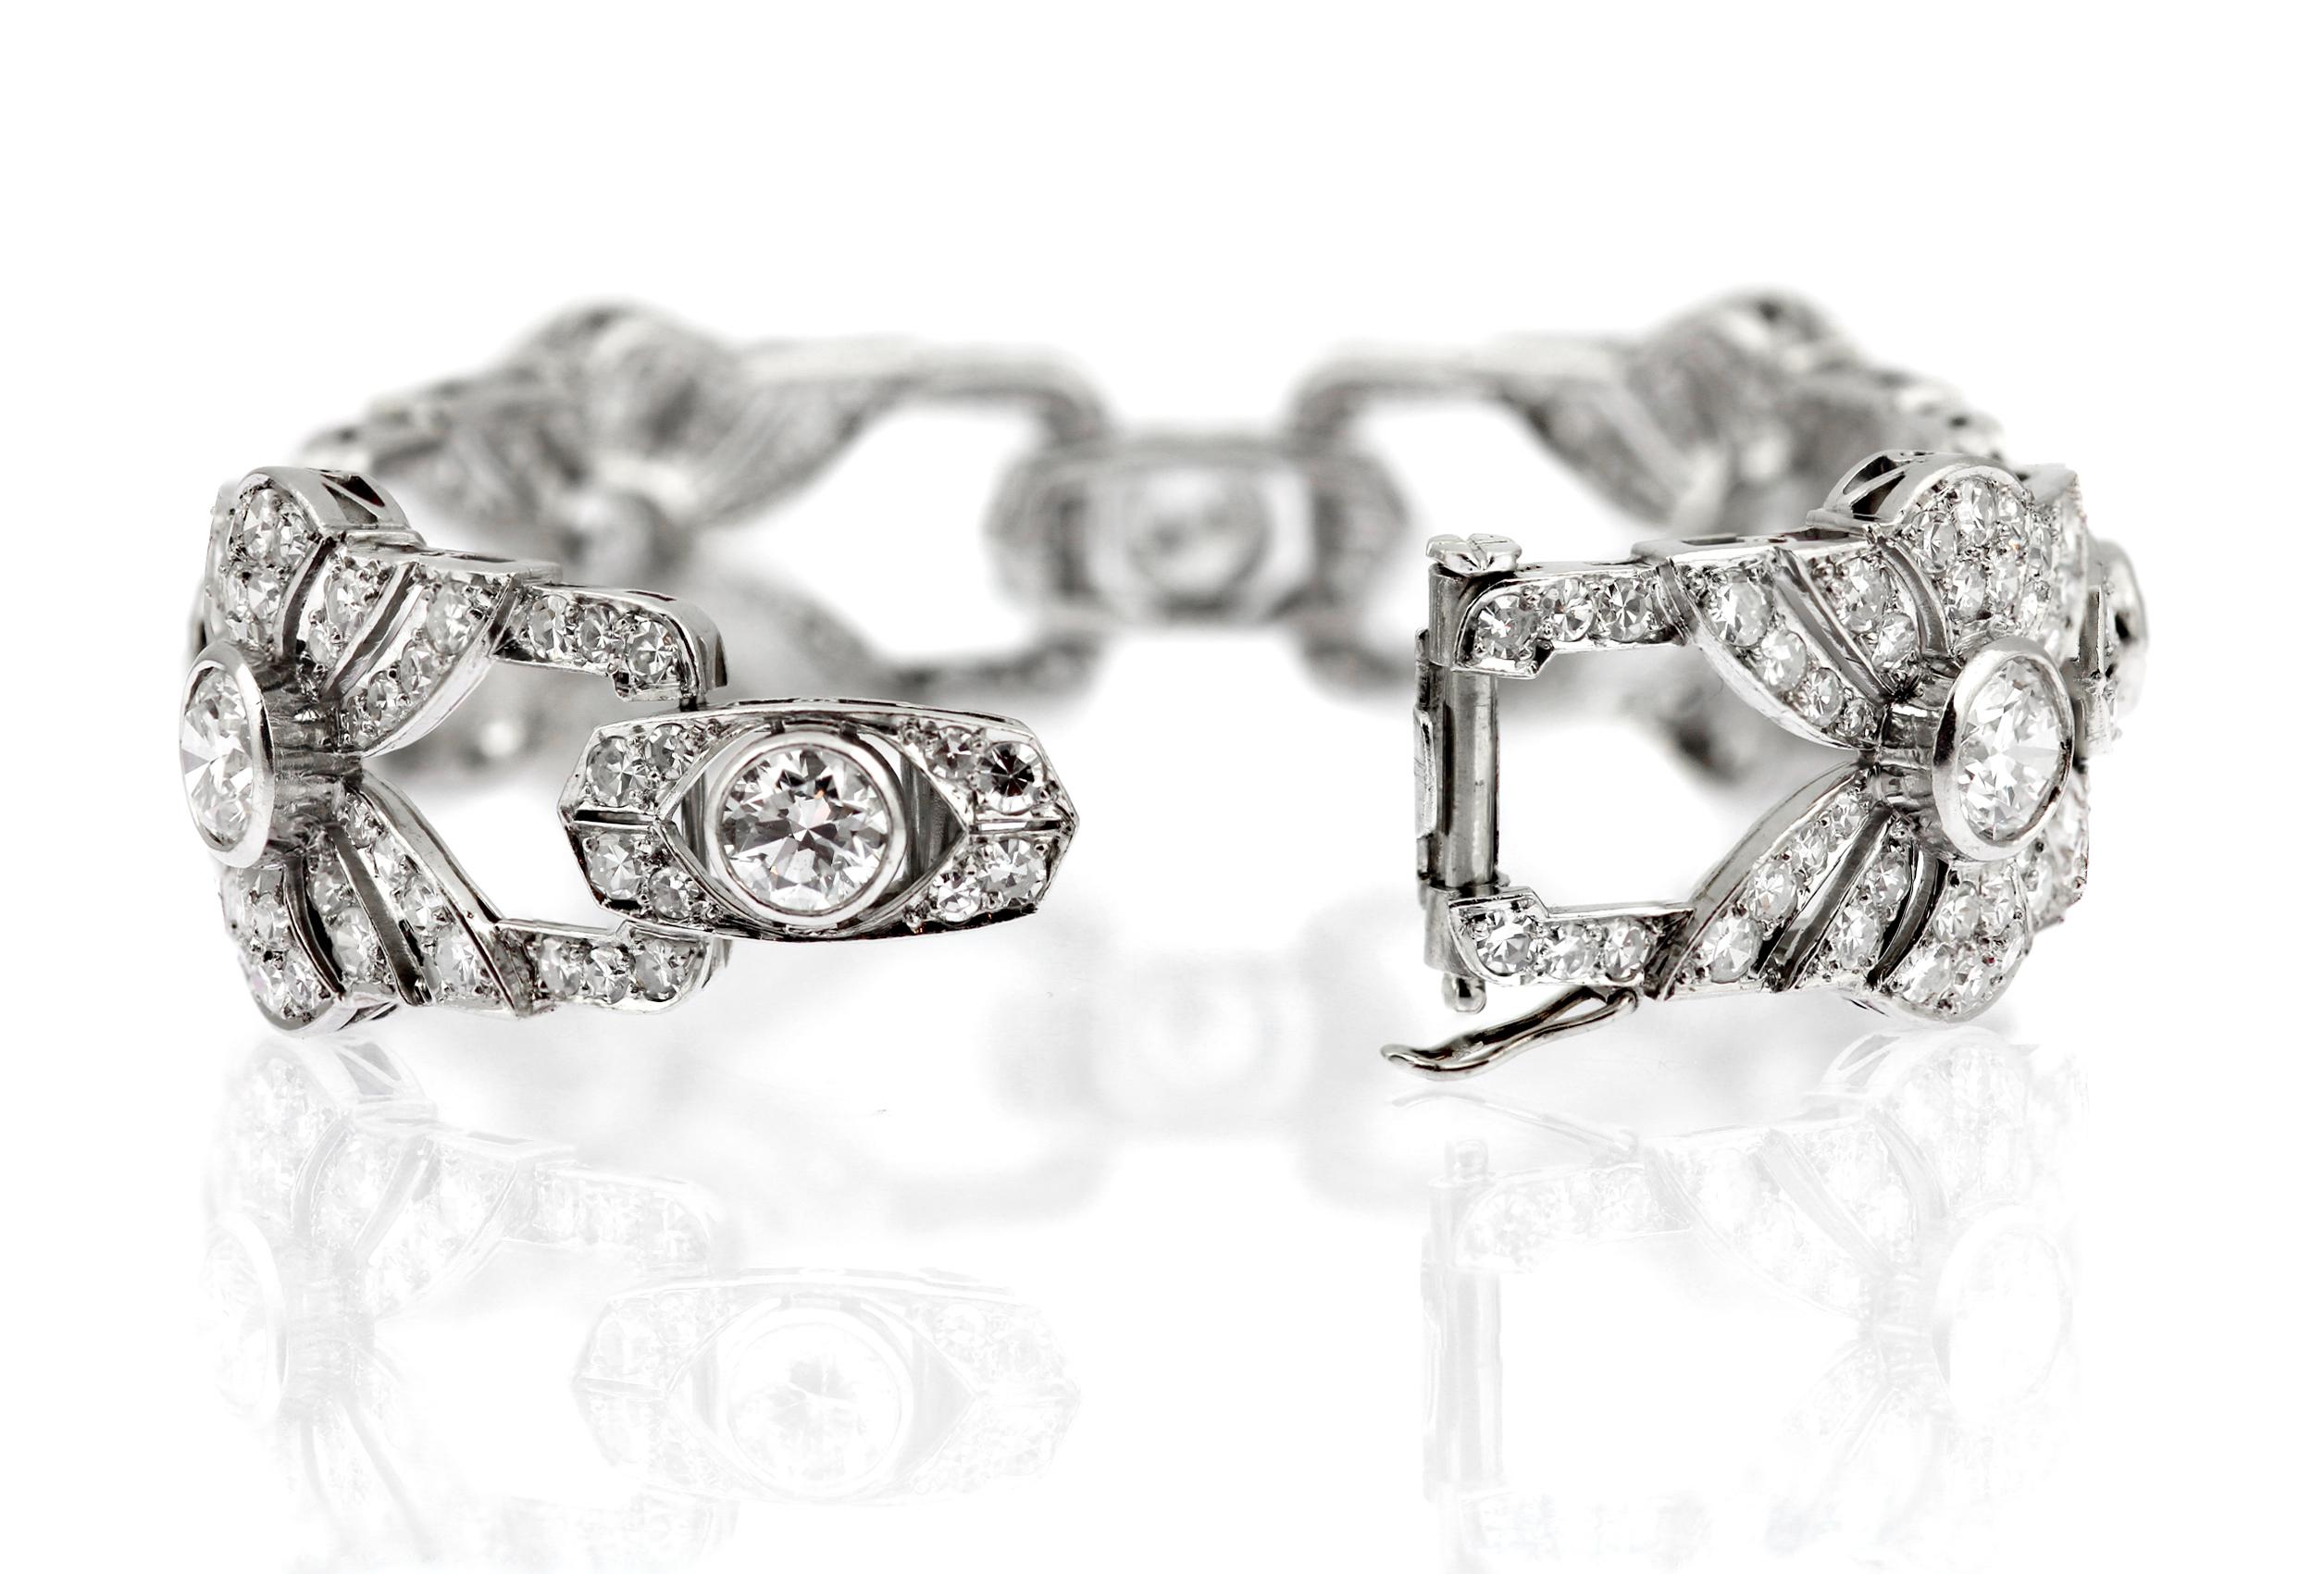 Women's Platinum Art Deco Fine White Diamond Bracelet with Fan Motif Design approx. 12ct For Sale